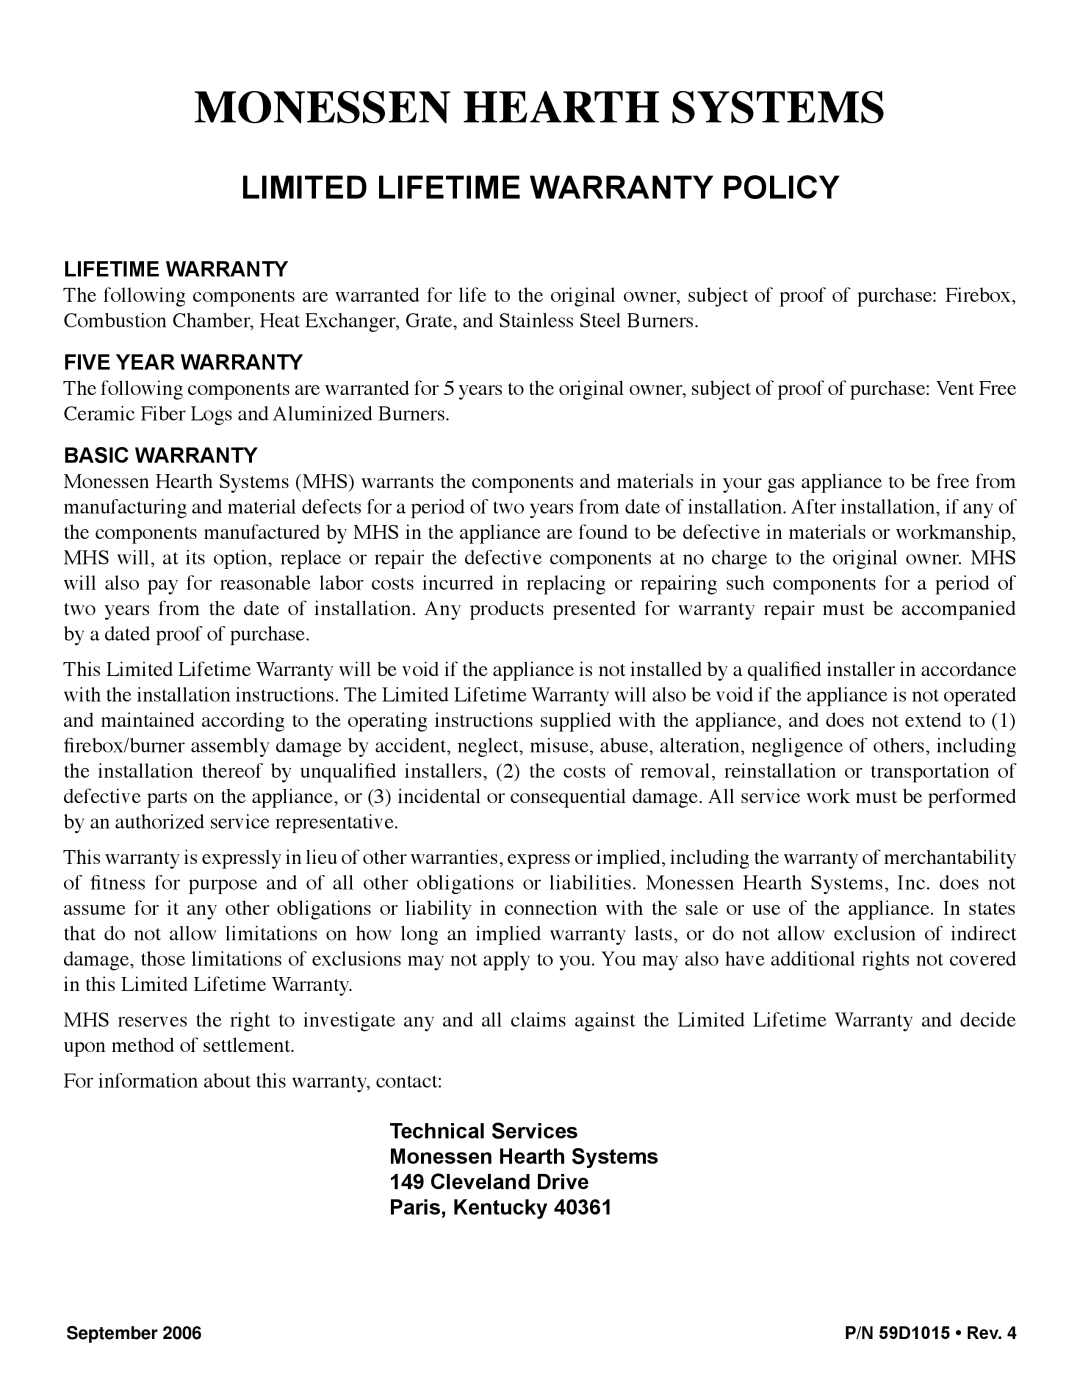 Monessen Hearth HVFL18 manual Lifetime Warranty, Five Year Warranty, Basic Warranty 